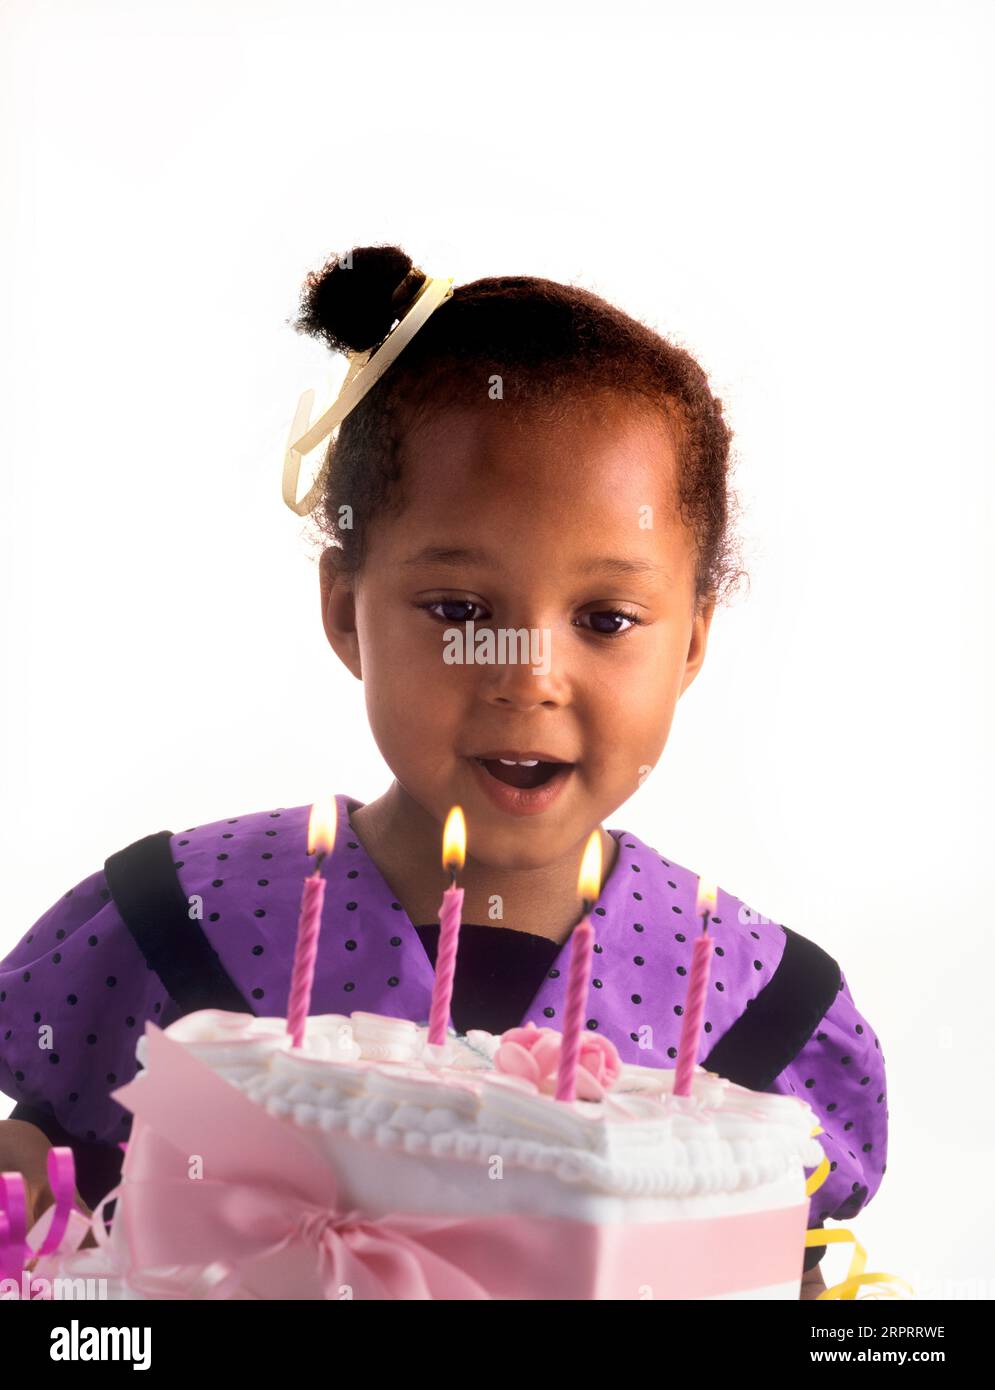 Cumpleaños de 4 años fotografías e imágenes de alta resolución - Alamy